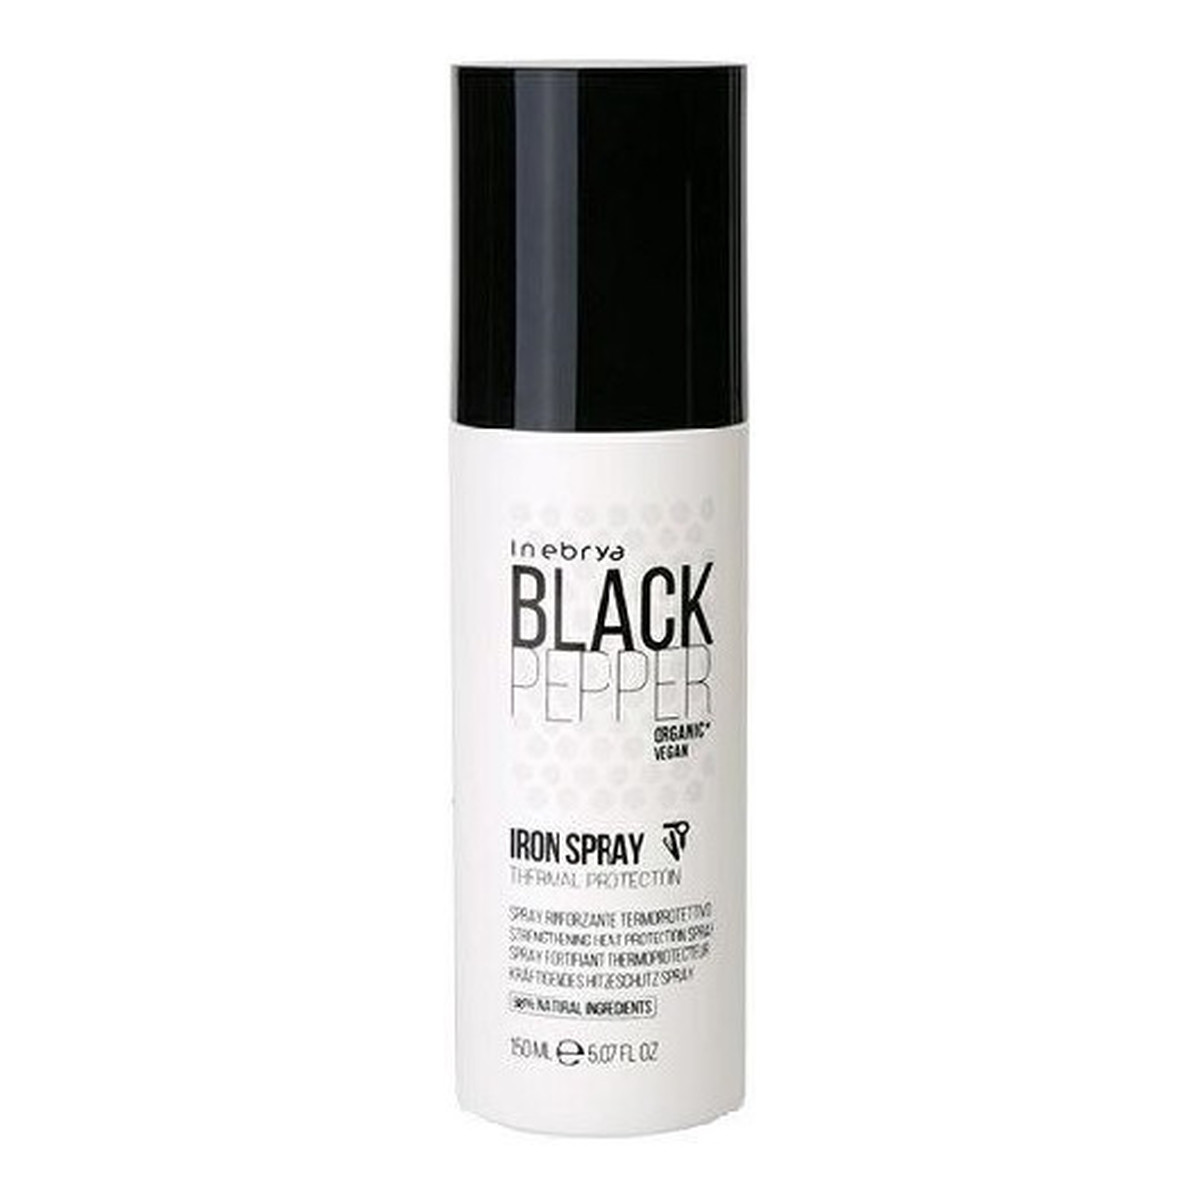 Inebrya Black Pepper Iron spray do włosów wzmacniający do ochrony termicznej 150ml